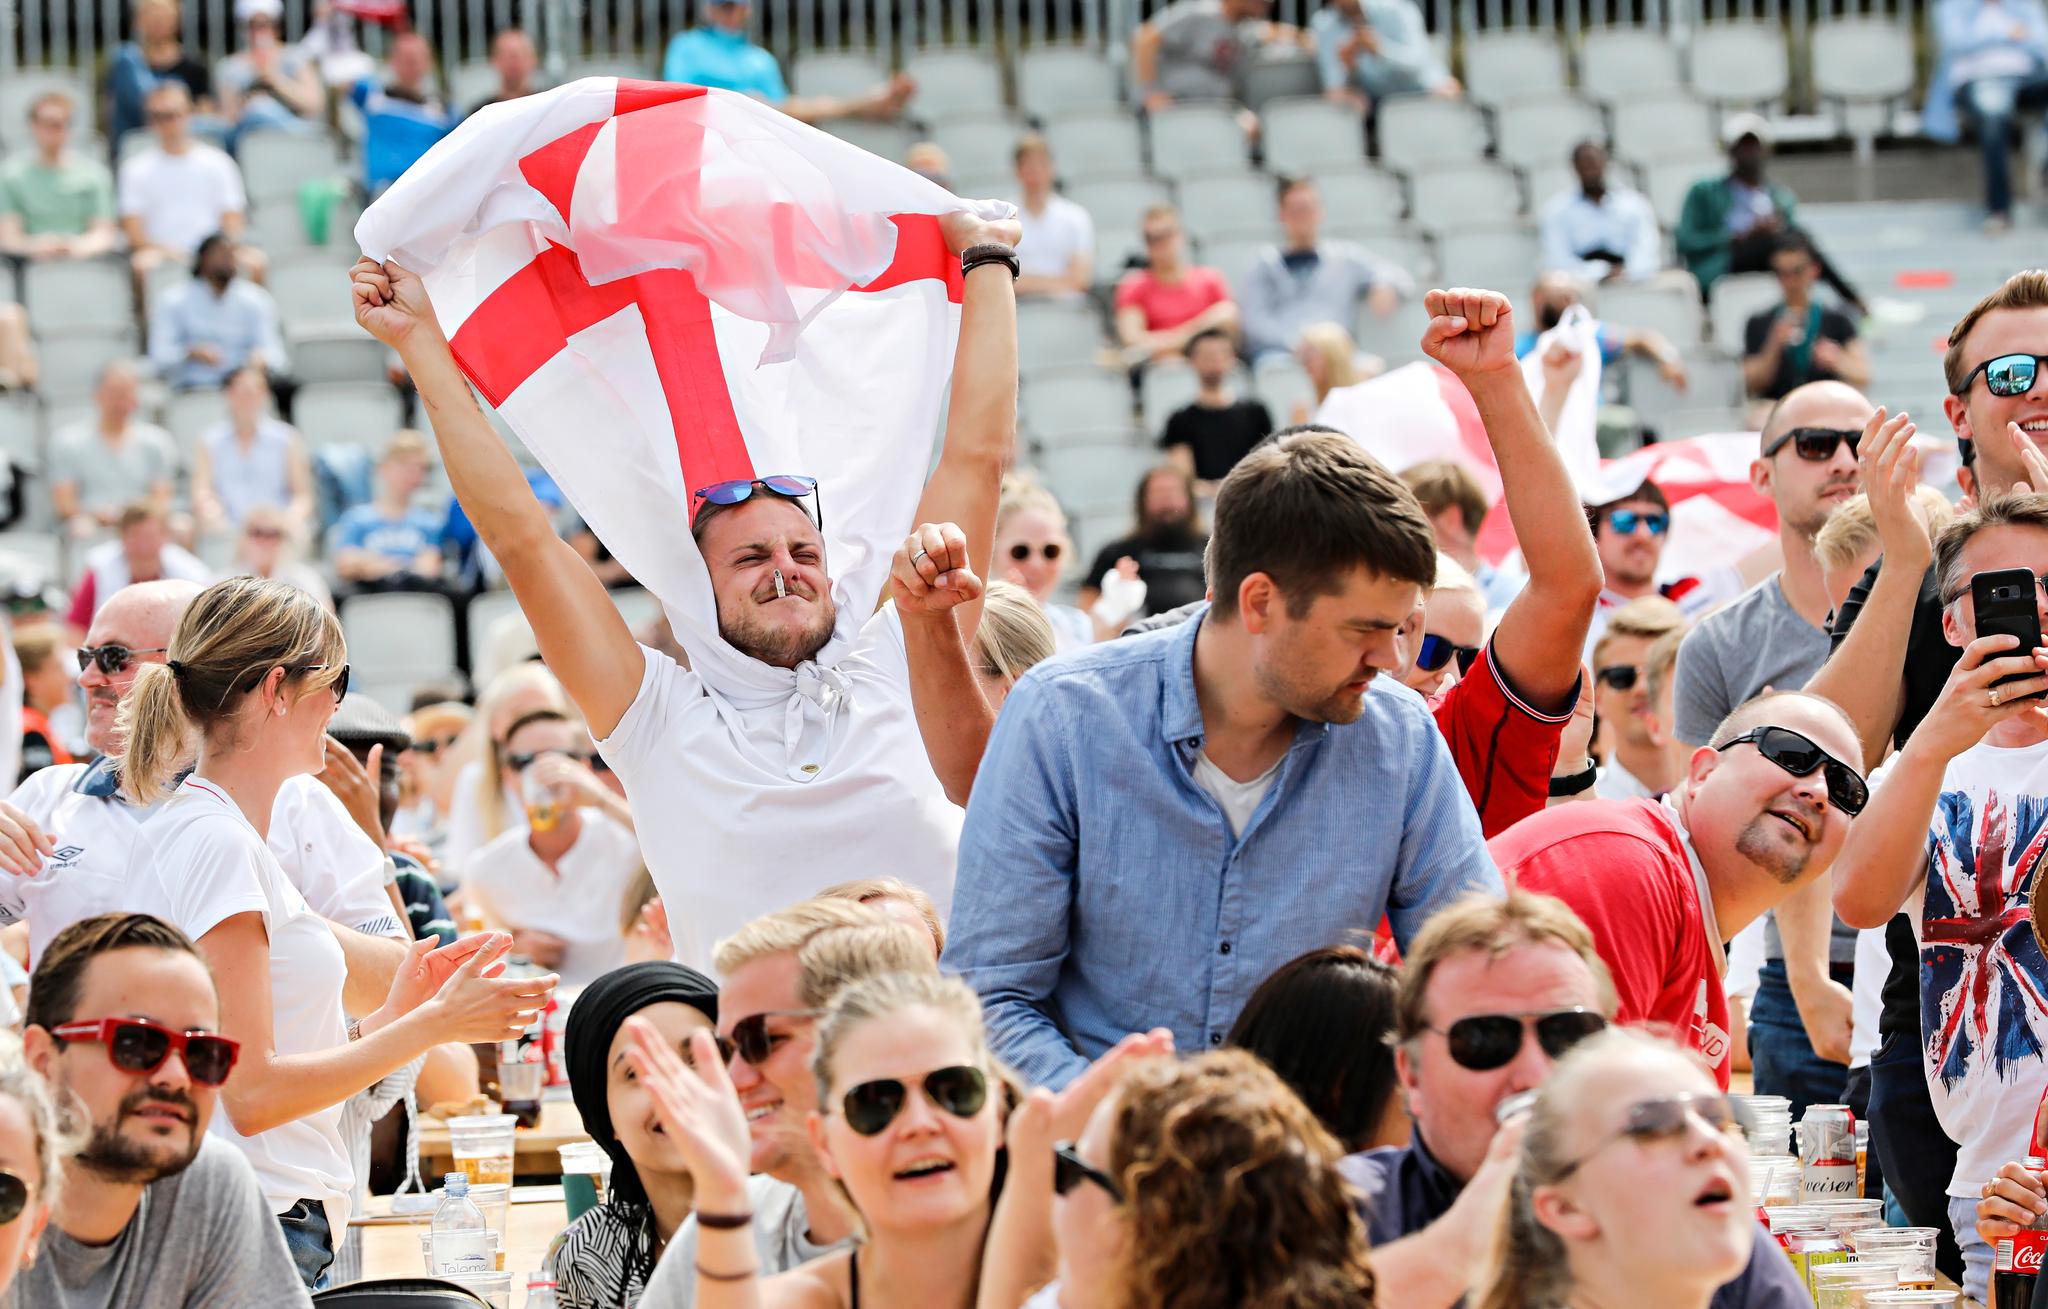  Luke Pickerang (jublende med flagg) mener dette er året England skal ta sin første etterlengtede VM-triumf siden 1966.